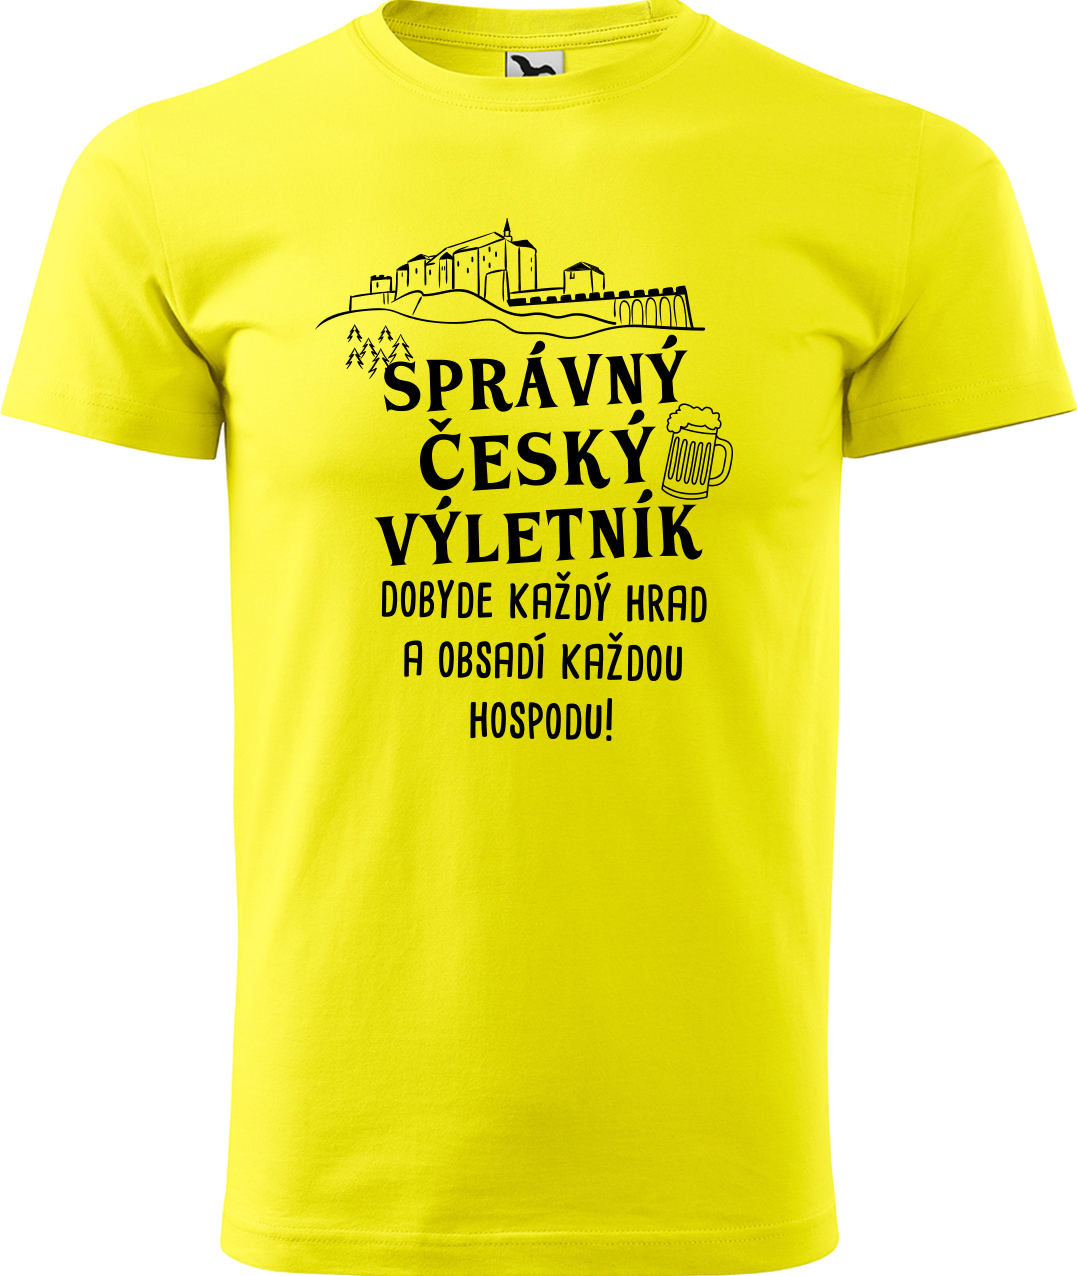 Pánské cestovatelské tričko - Správný český výletník Velikost: M, Barva: Žlutá (04), Střih: pánský